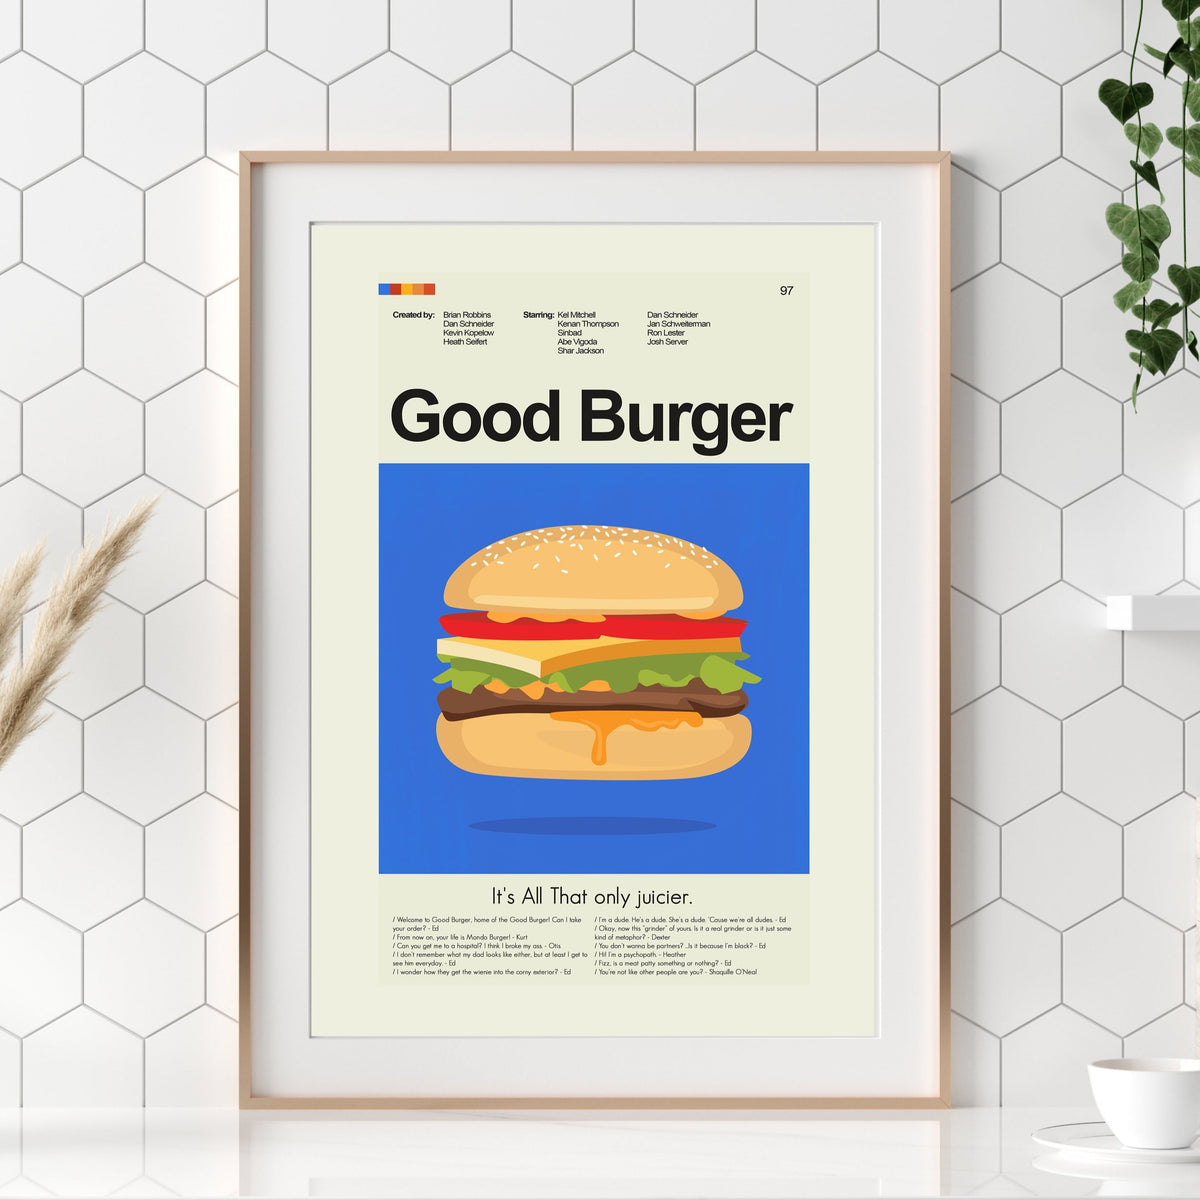 Good Burger - Good Burger | 12"x18" or 18"x24" Print only